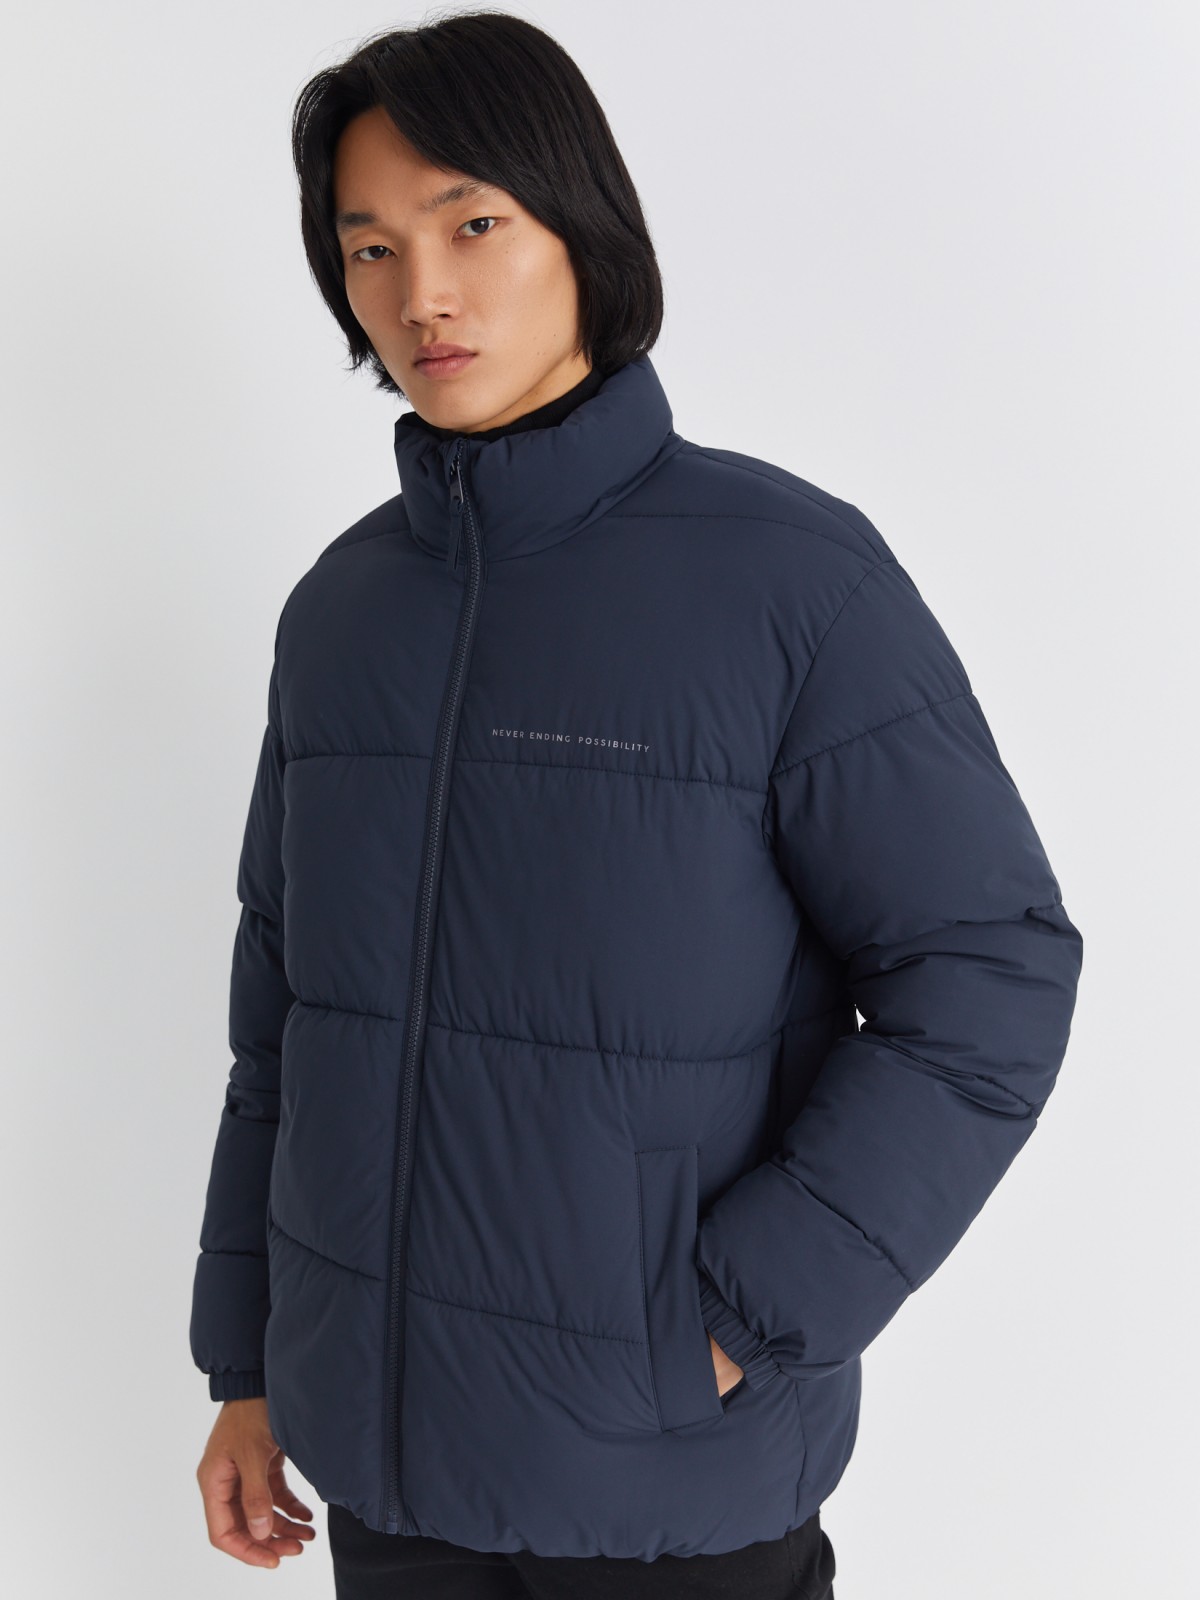 Тёплая стёганая куртка на молнии с воротником-стойкой zolla 01334510L134, цвет синий, размер S - фото 3